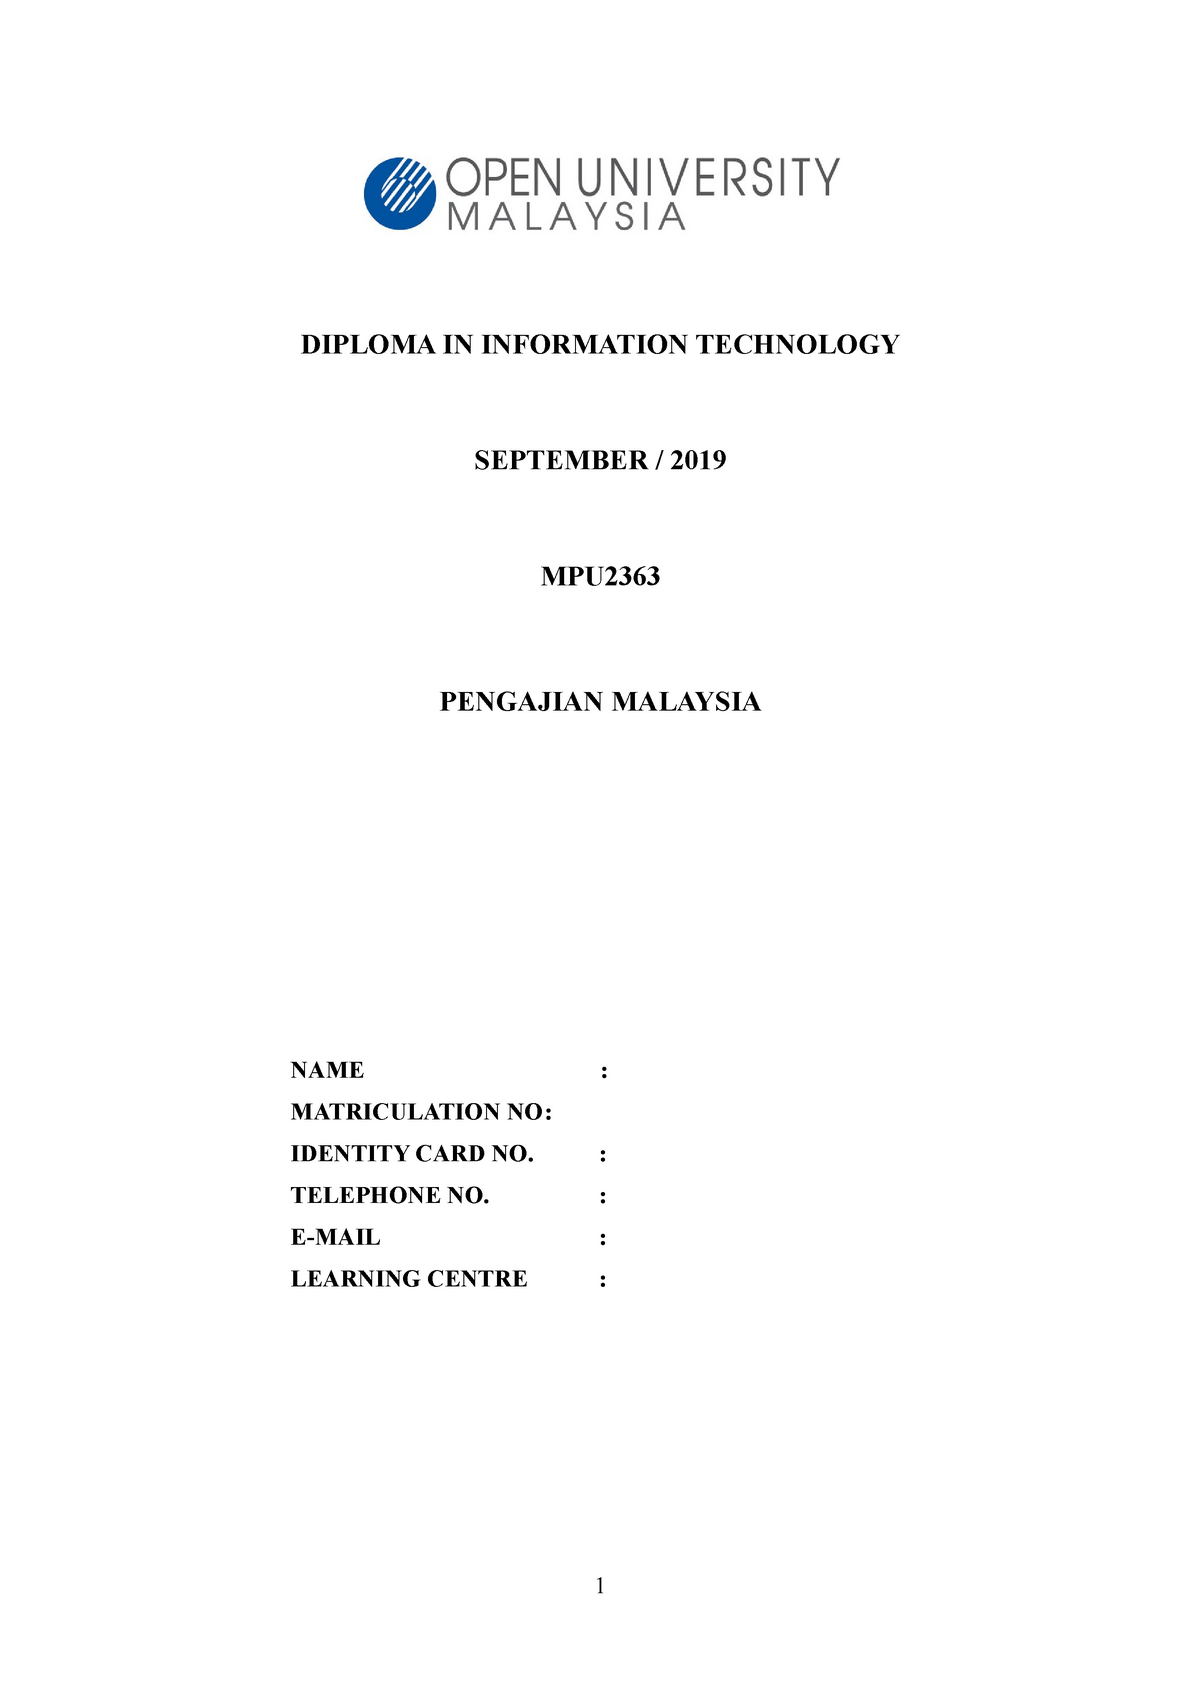 Pengajian Malaysia 2 - Grade: B - information technology - bit23 